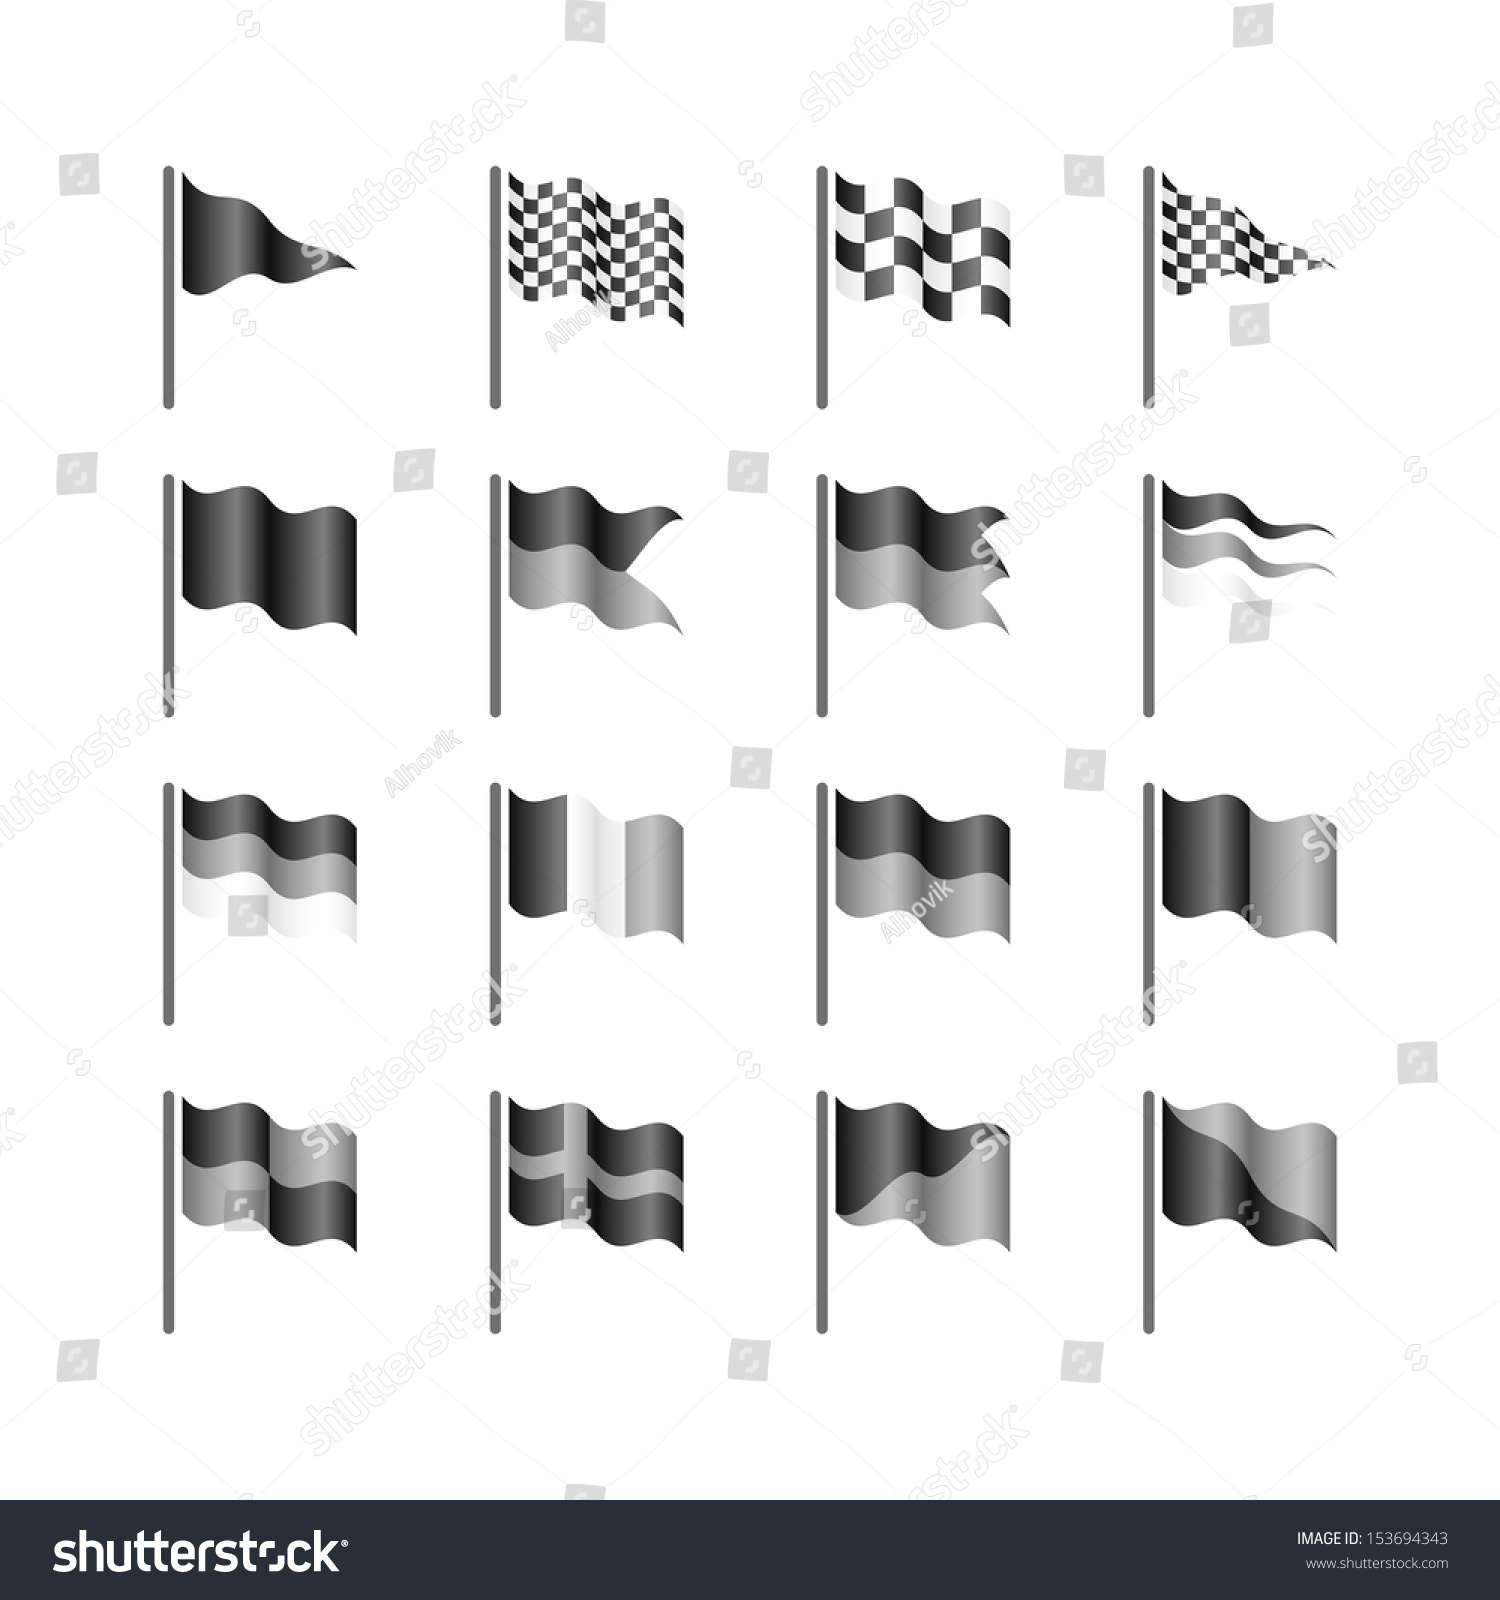 Flags Template. Vector. - 153694343 : Shutterstock